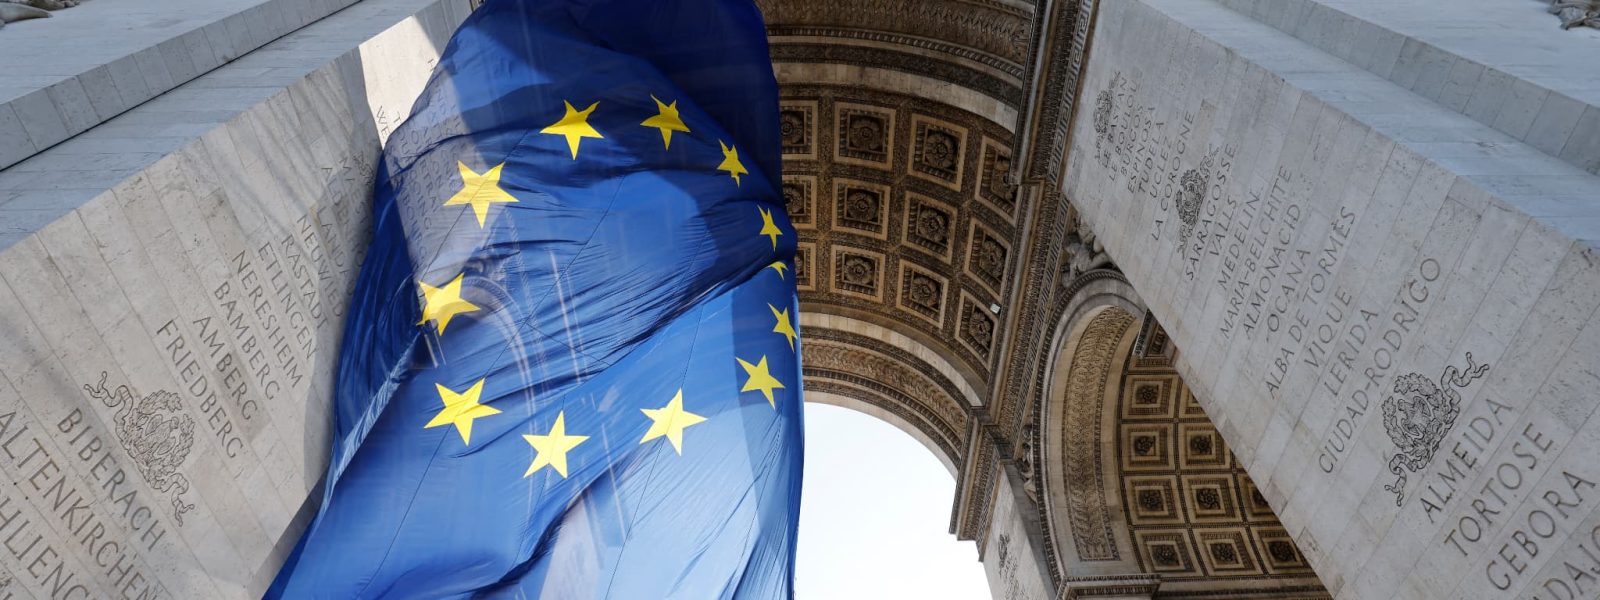 Le-drapeau-europeen-sous-l-Arc-de-triomphe-pour-le-sommet-de-Versailles-jeudi-10-mars-2022-1367011